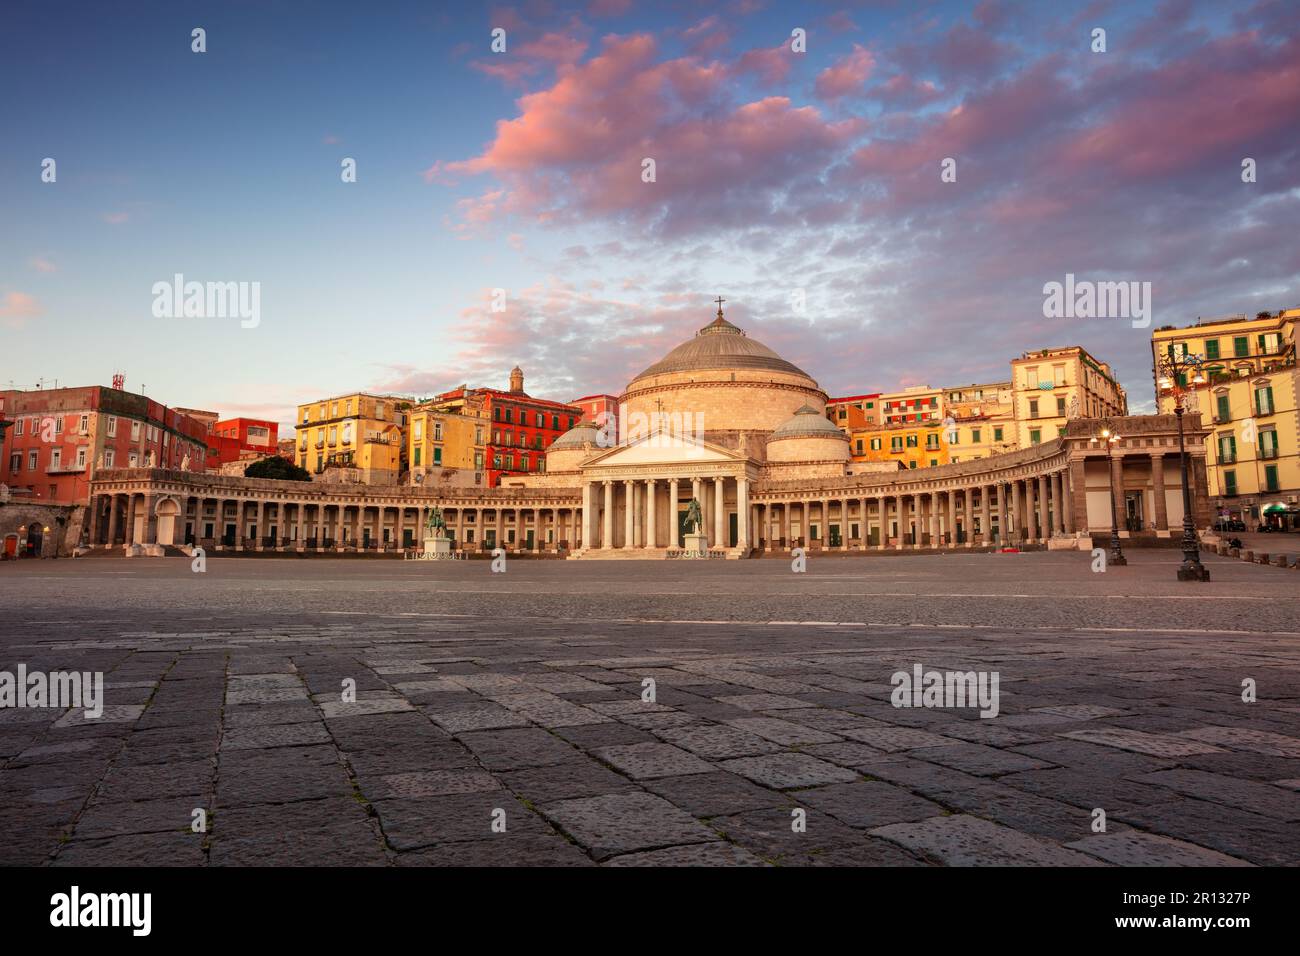 Napoli, Italia. Immagine del paesaggio urbano di Napoli, Italia con vista sulla grande piazza del Plebiscito all'alba. Foto Stock